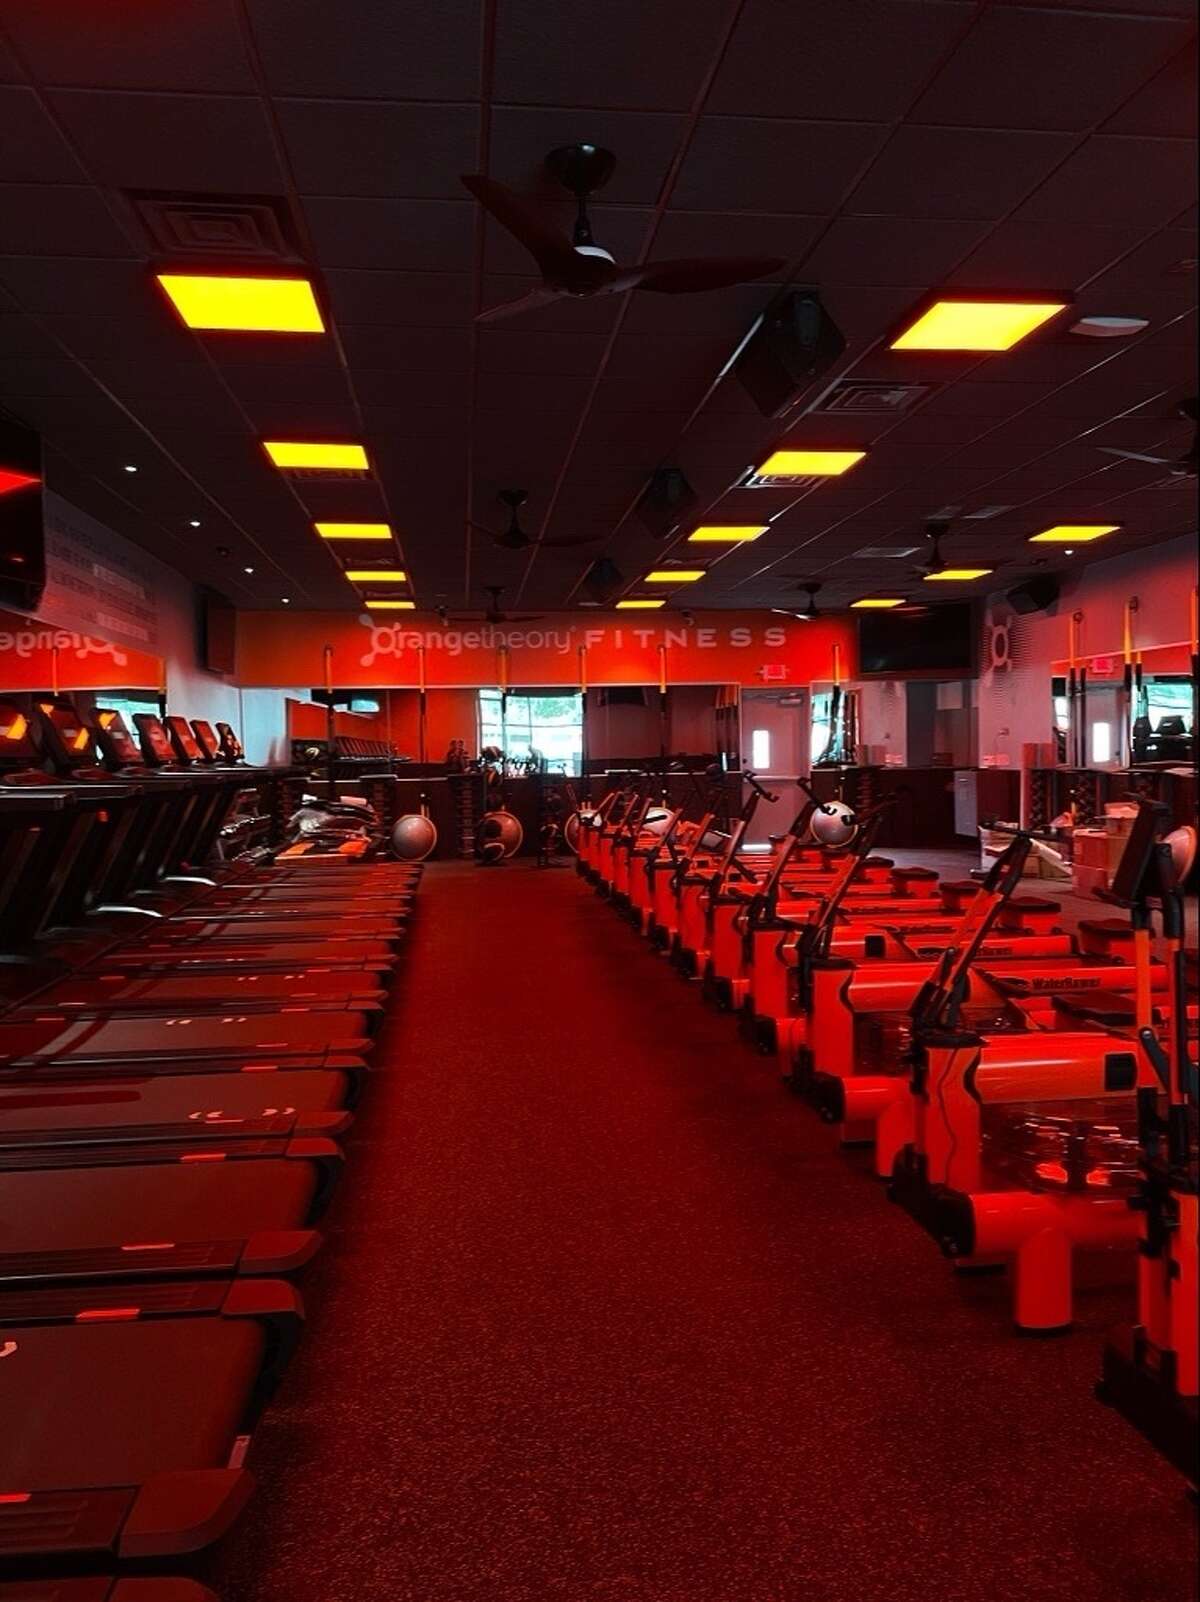 Orangetheory Fitness has a new location near the Texas Medical Center at 7205 Fannin.